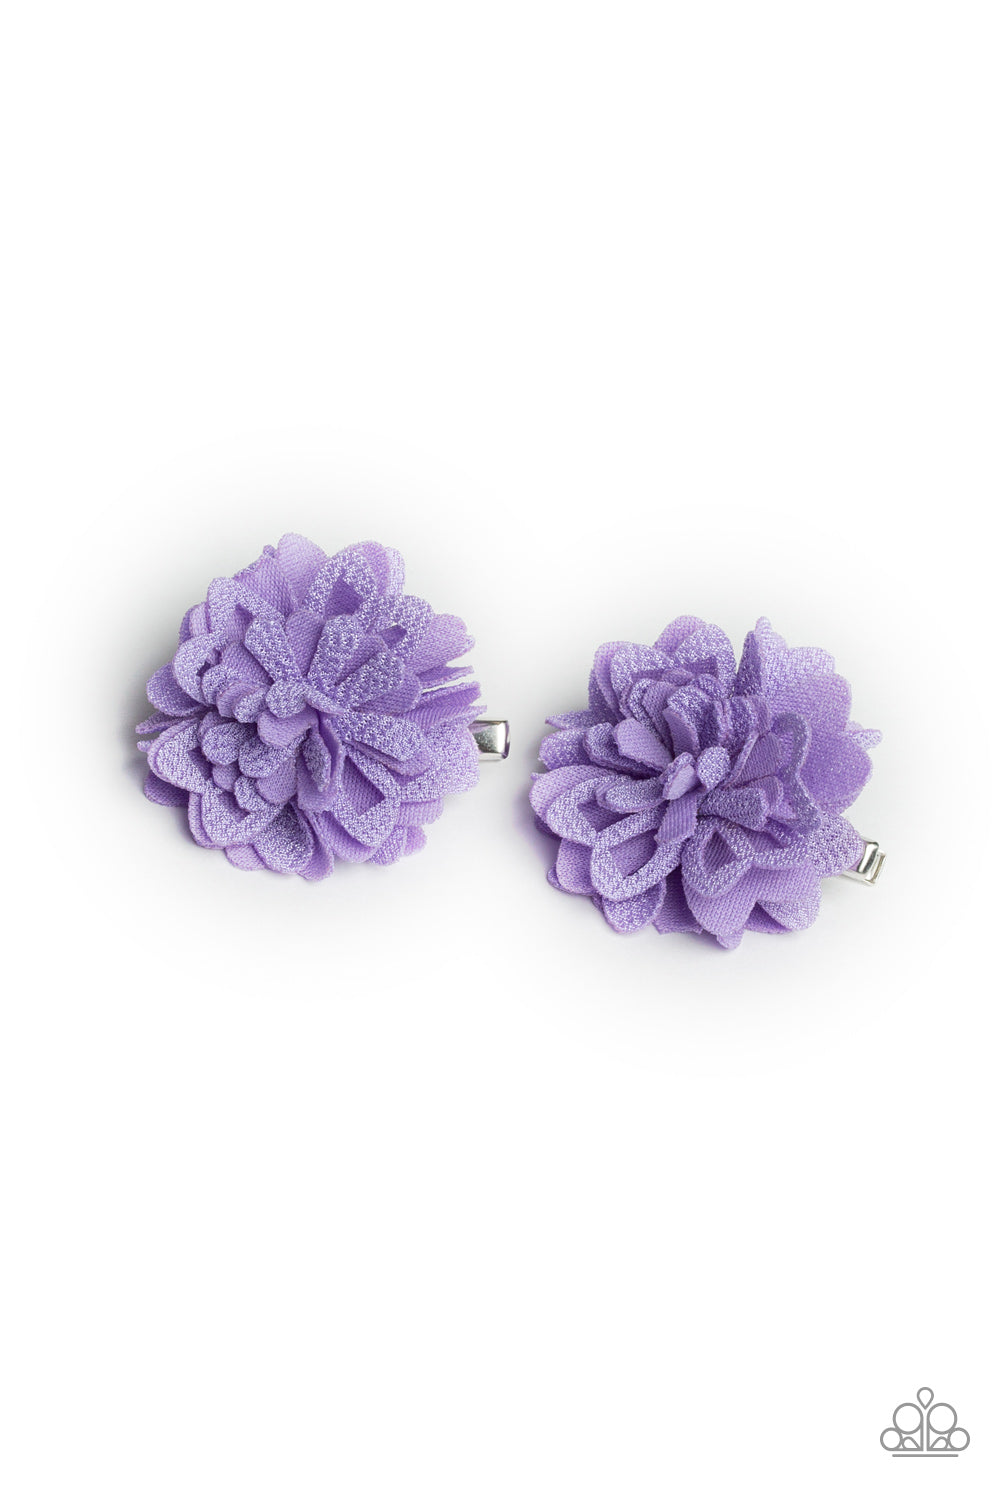 Fauna and Flora - Purple Hair Clip